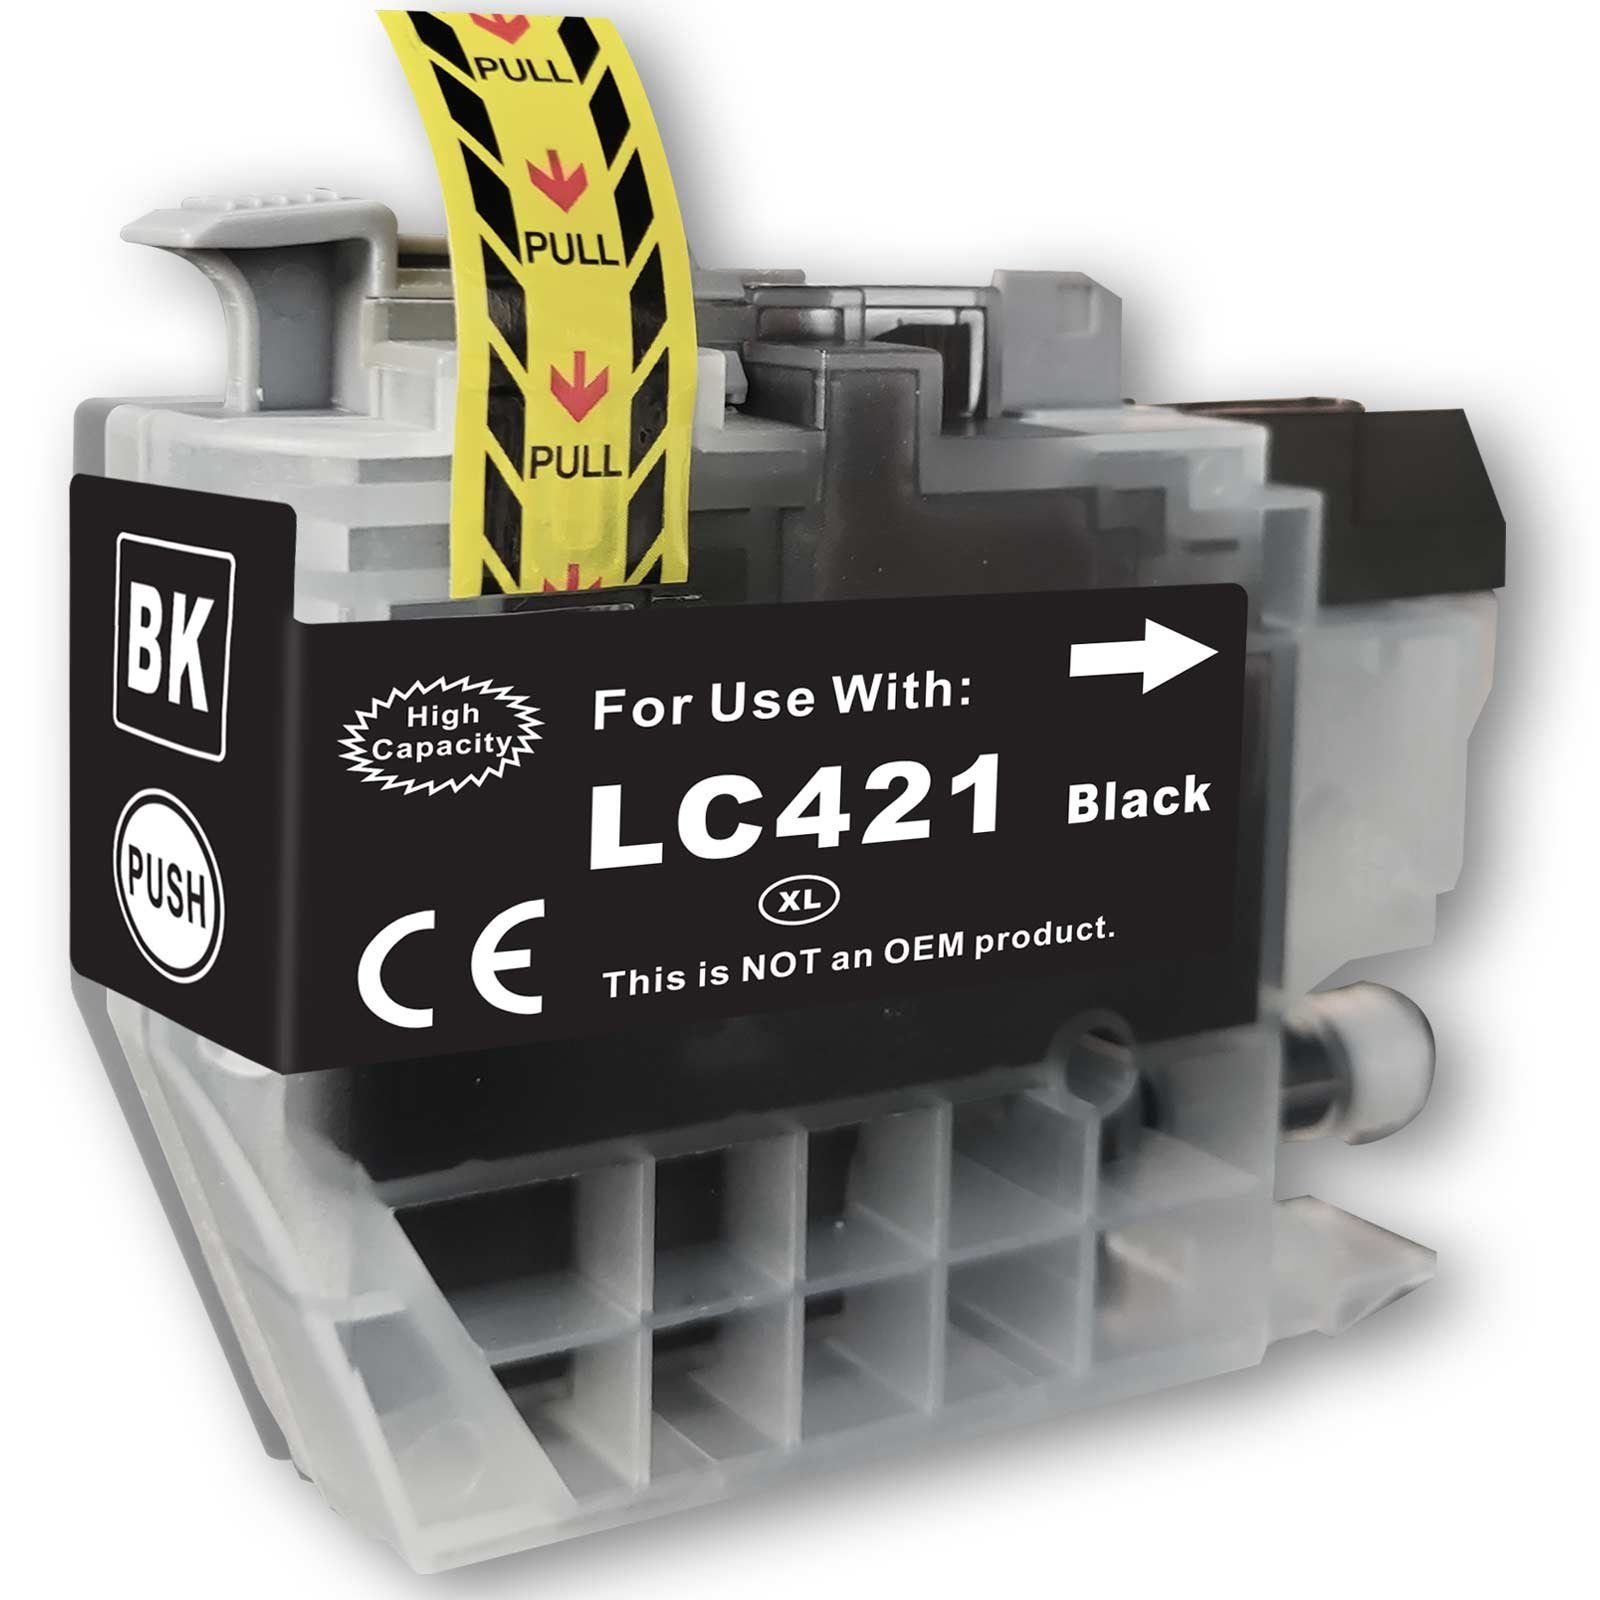 Black Schwarz LC-421 Kompatibel Druckerpatrone Tintenpatrone für XL 500 BK Brother